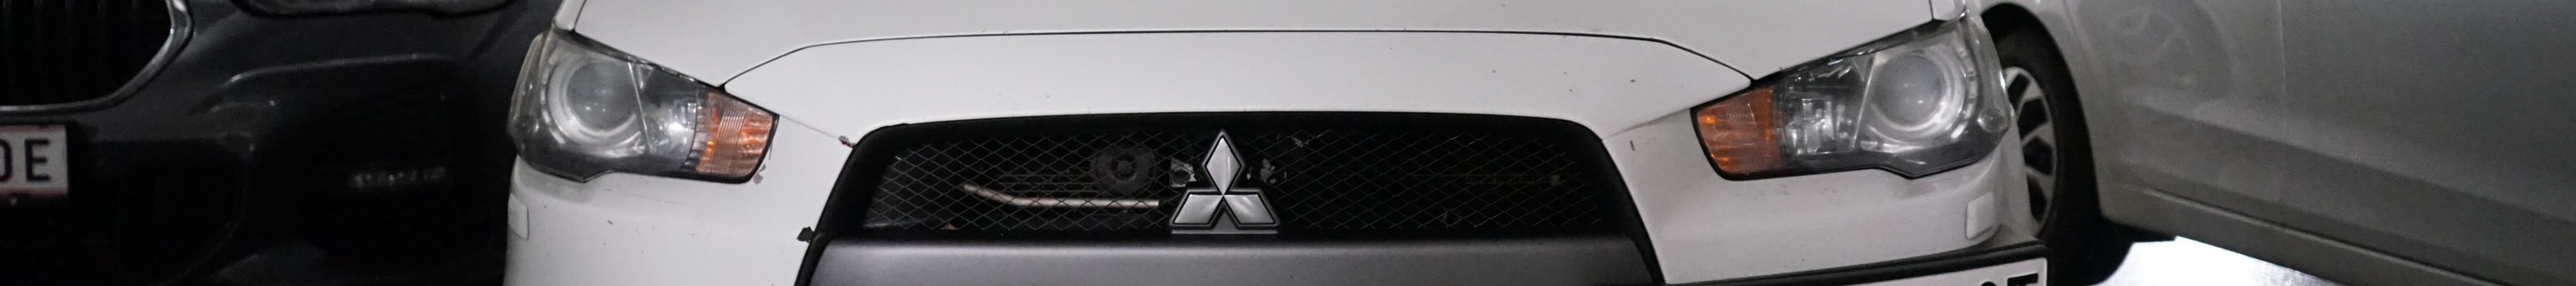 Mitsubishi Lancer Evolution X FQ-300